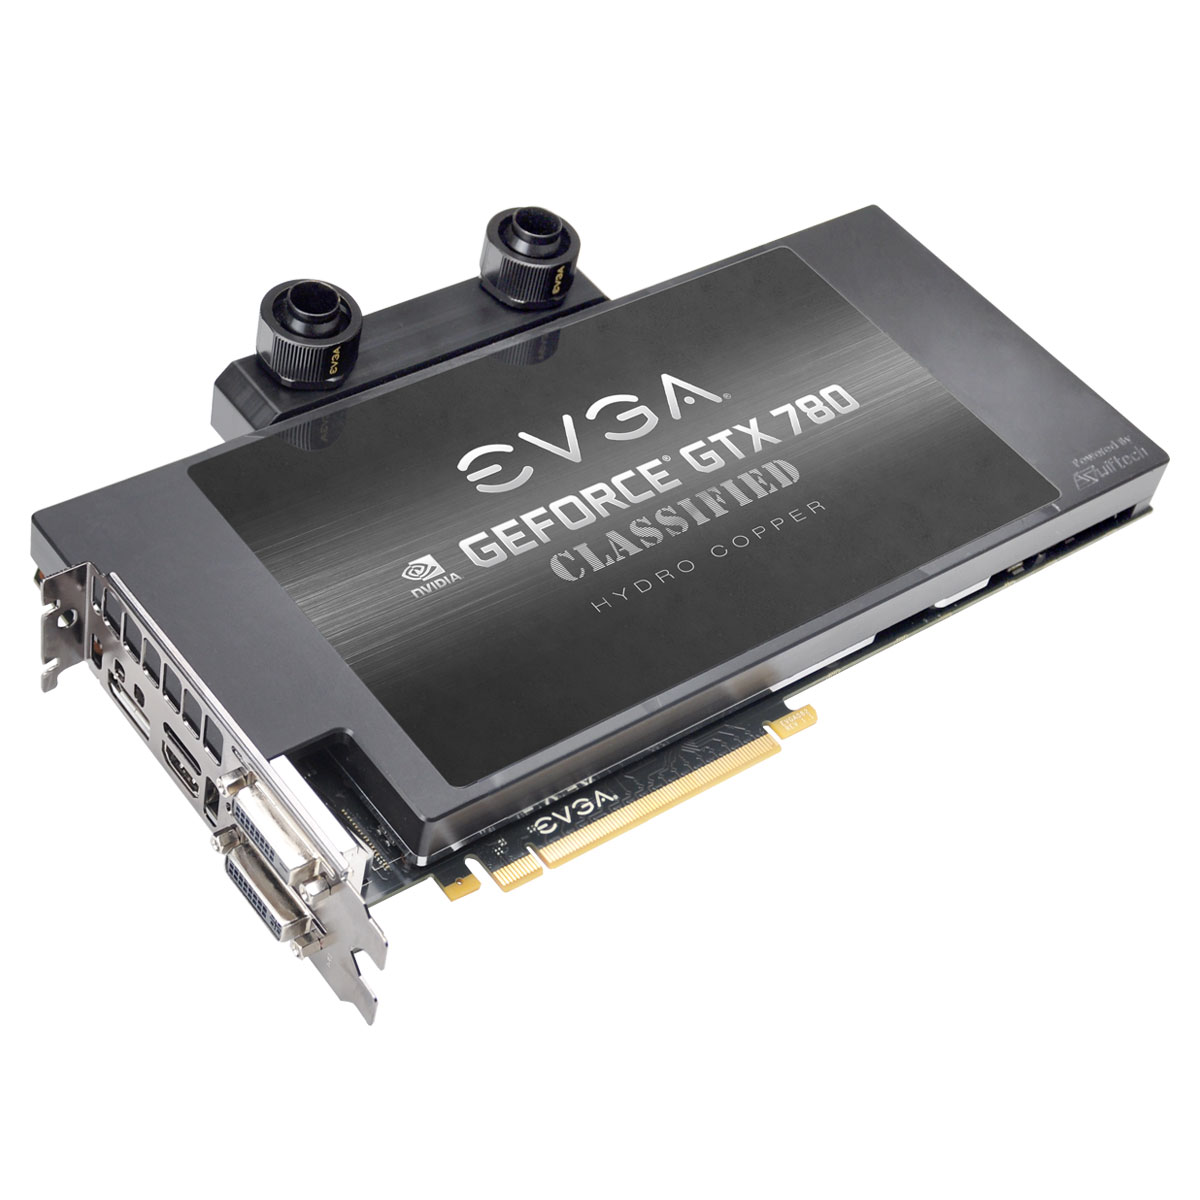 Immagine pubblicata in relazione al seguente contenuto: EVGA annuncia due top card GeForce GTX 780 con Hydro Copper | Nome immagine: news19600_EVGA-GeForce-GTX-780-Watercooler_1.jpg